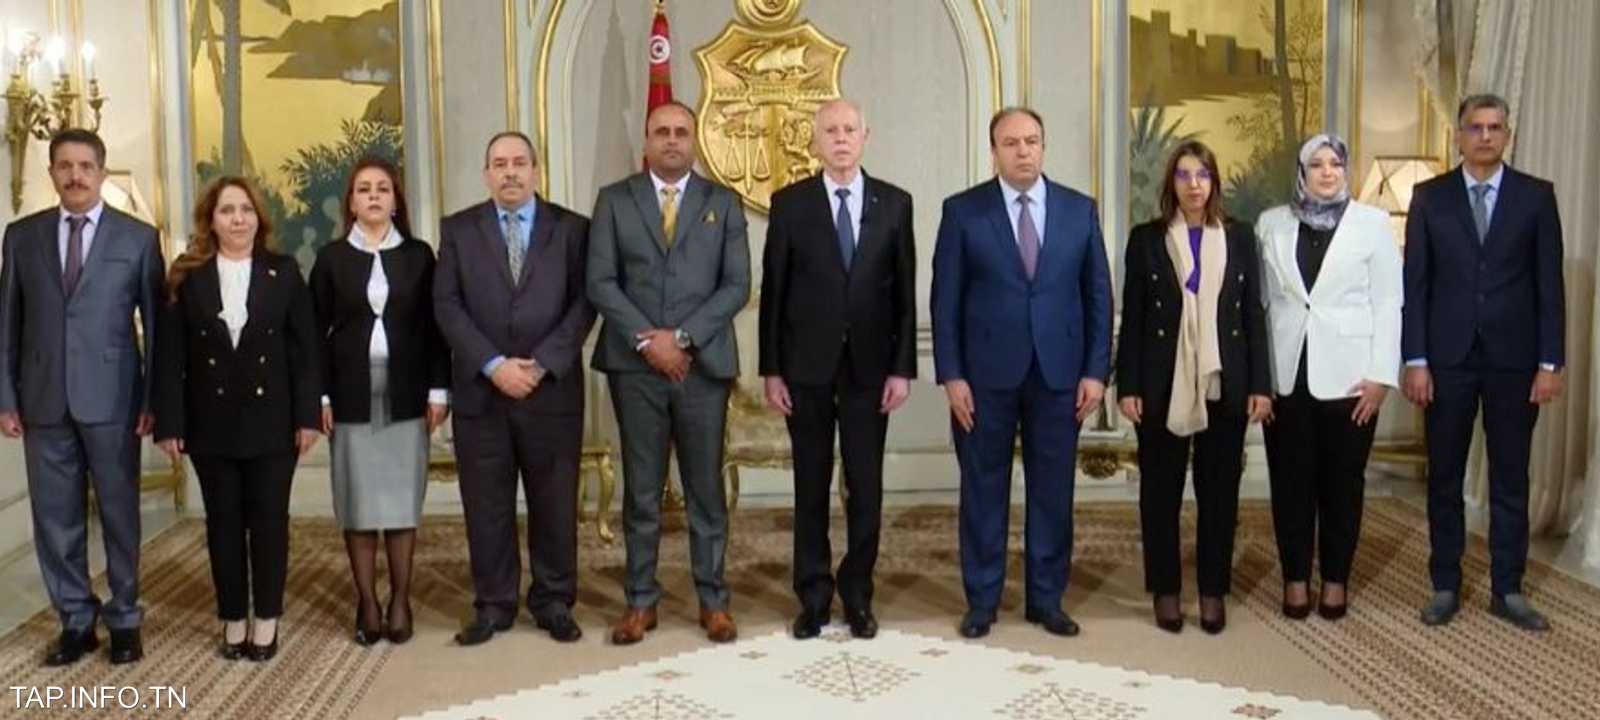 اللجنة مكونة من 8 أعضاء